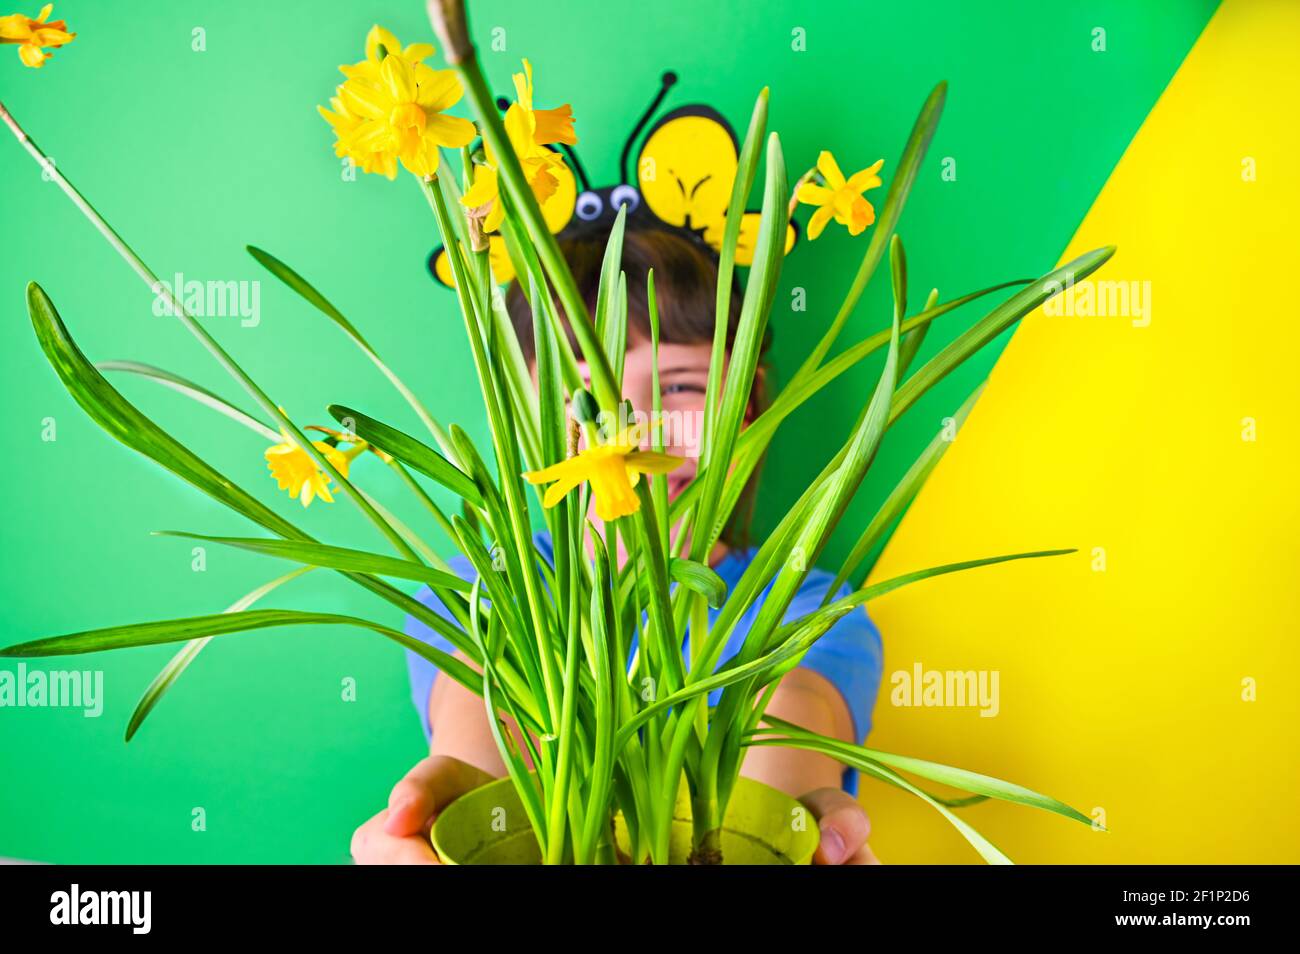 La bambina si nascose dietro i narcisi gialli su sfondo verde. Il bambino felice con i tappi delle api sta tenendo una pentola dei fiori del giardino. Stagione di piantatura nel giardino in primavera. Messa a fuoco selettiva. Spazio di copia Foto Stock